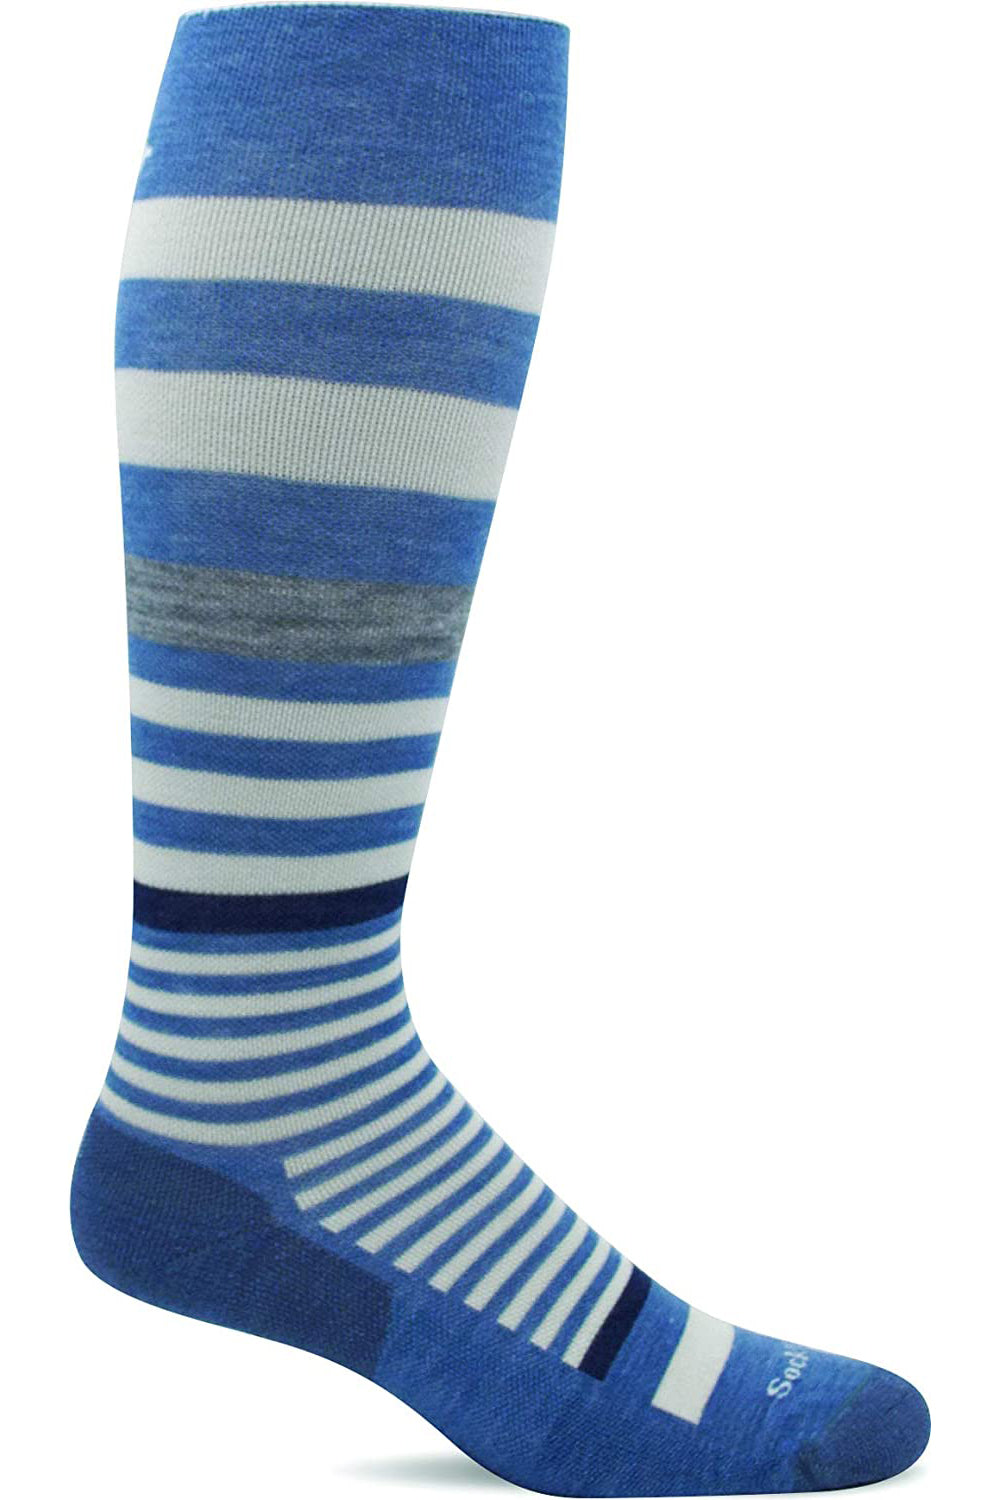 Sockwell Women's Orbital Stripe Sock in Bluestone color from the side